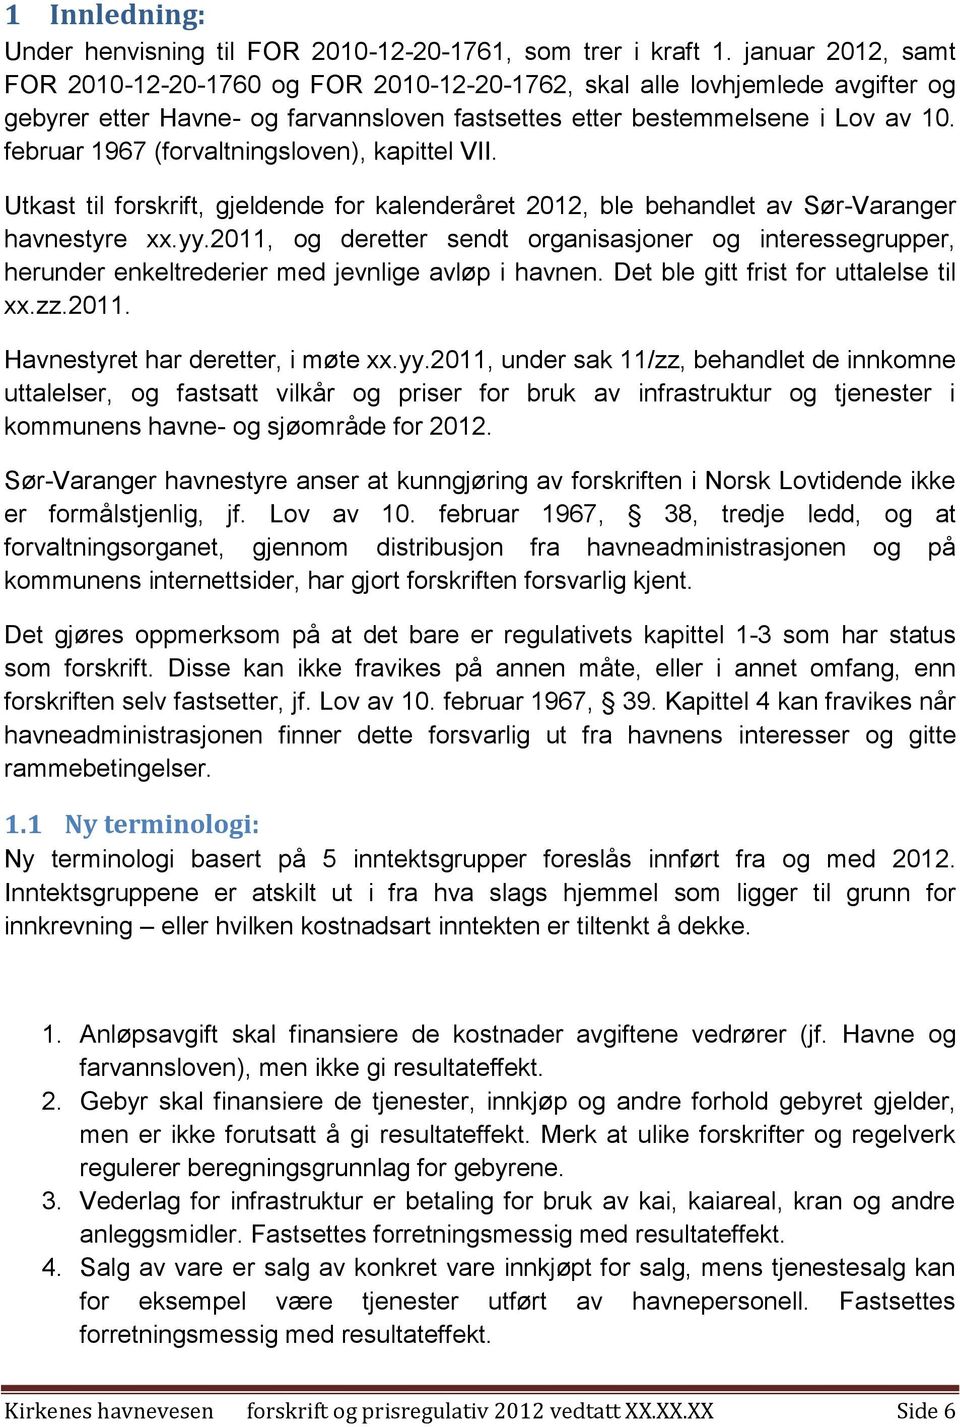 februar 1967 (forvaltningsloven), kapittel VII. Utkast til forskrift, gjeldende for kalenderåret 2012, ble behandlet av Sør-Varanger havnestyre xx.yy.